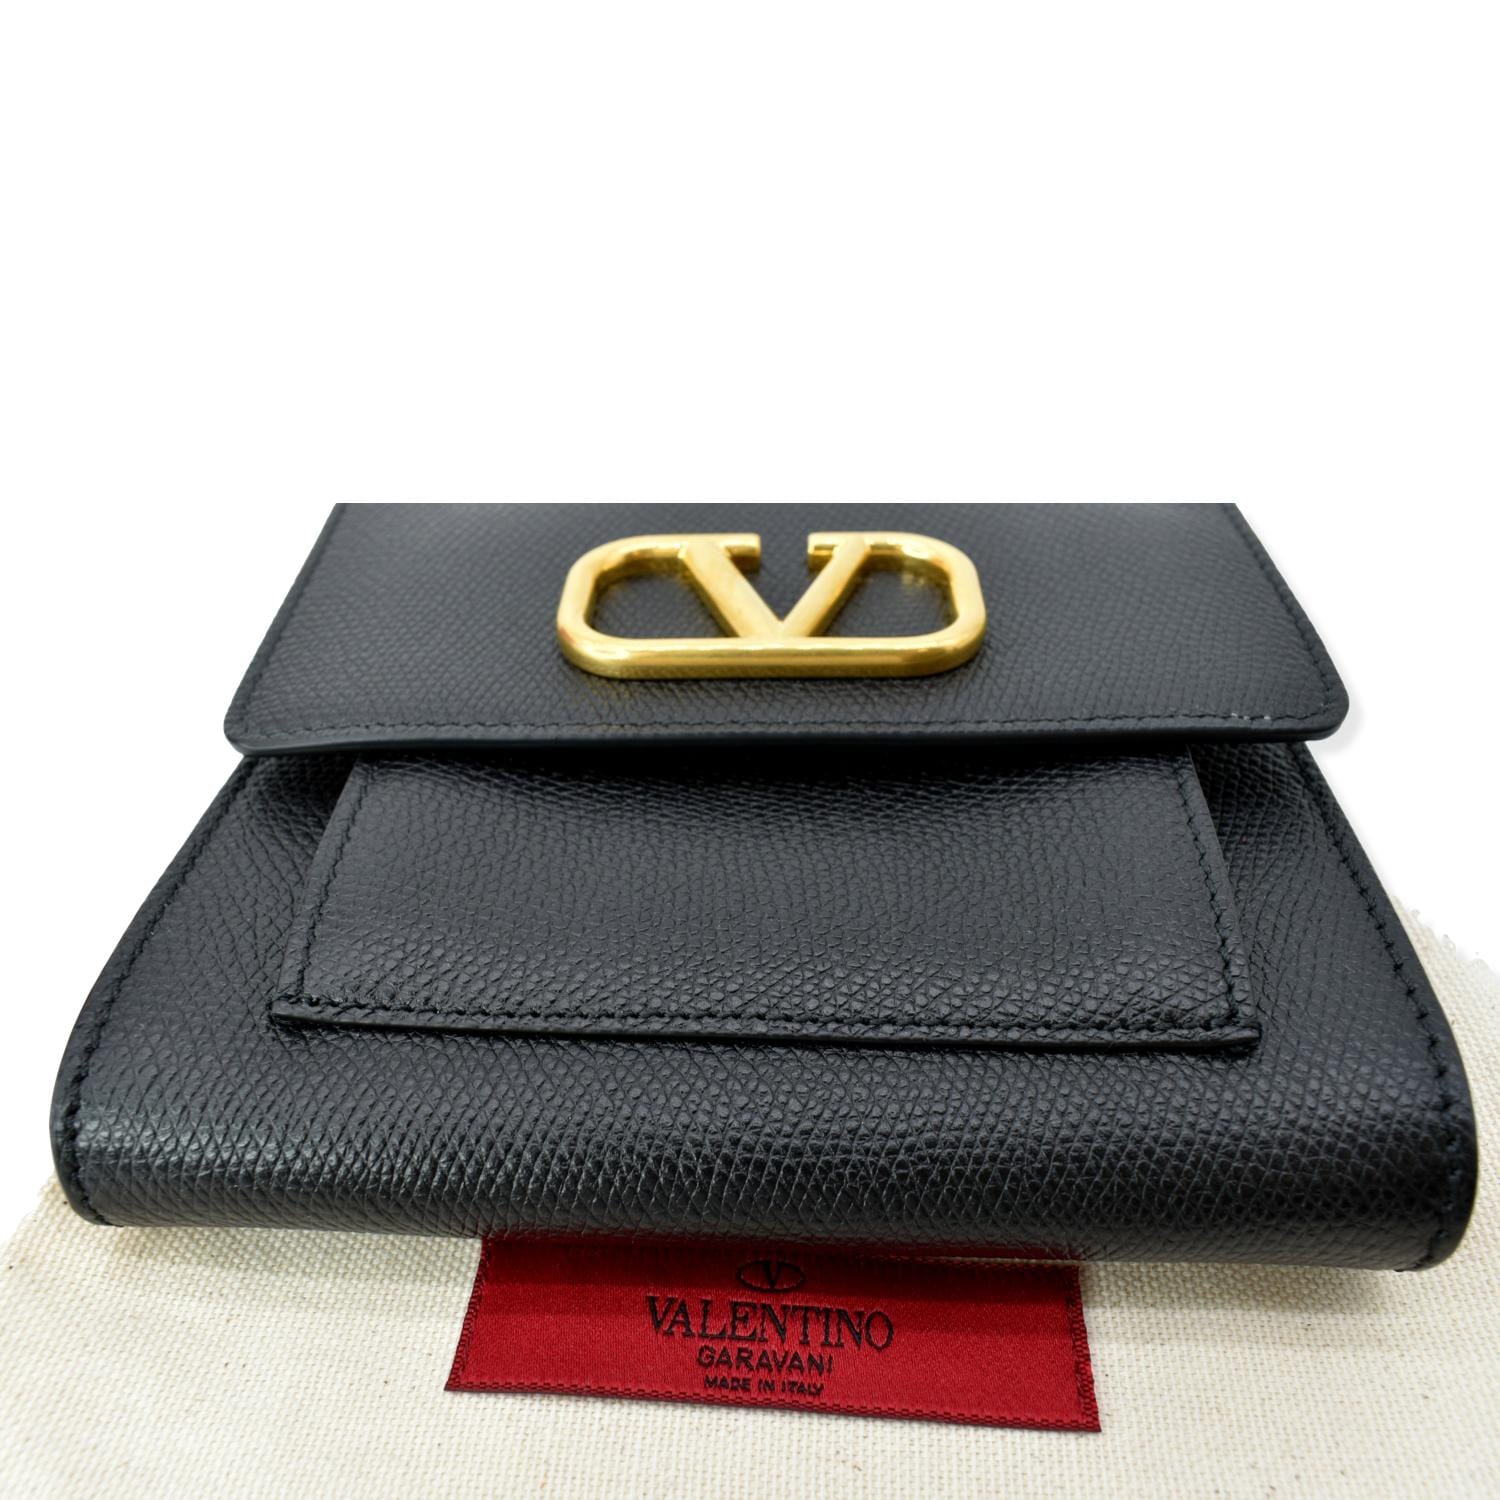 Valentino Garavani VSling bag in grained leather